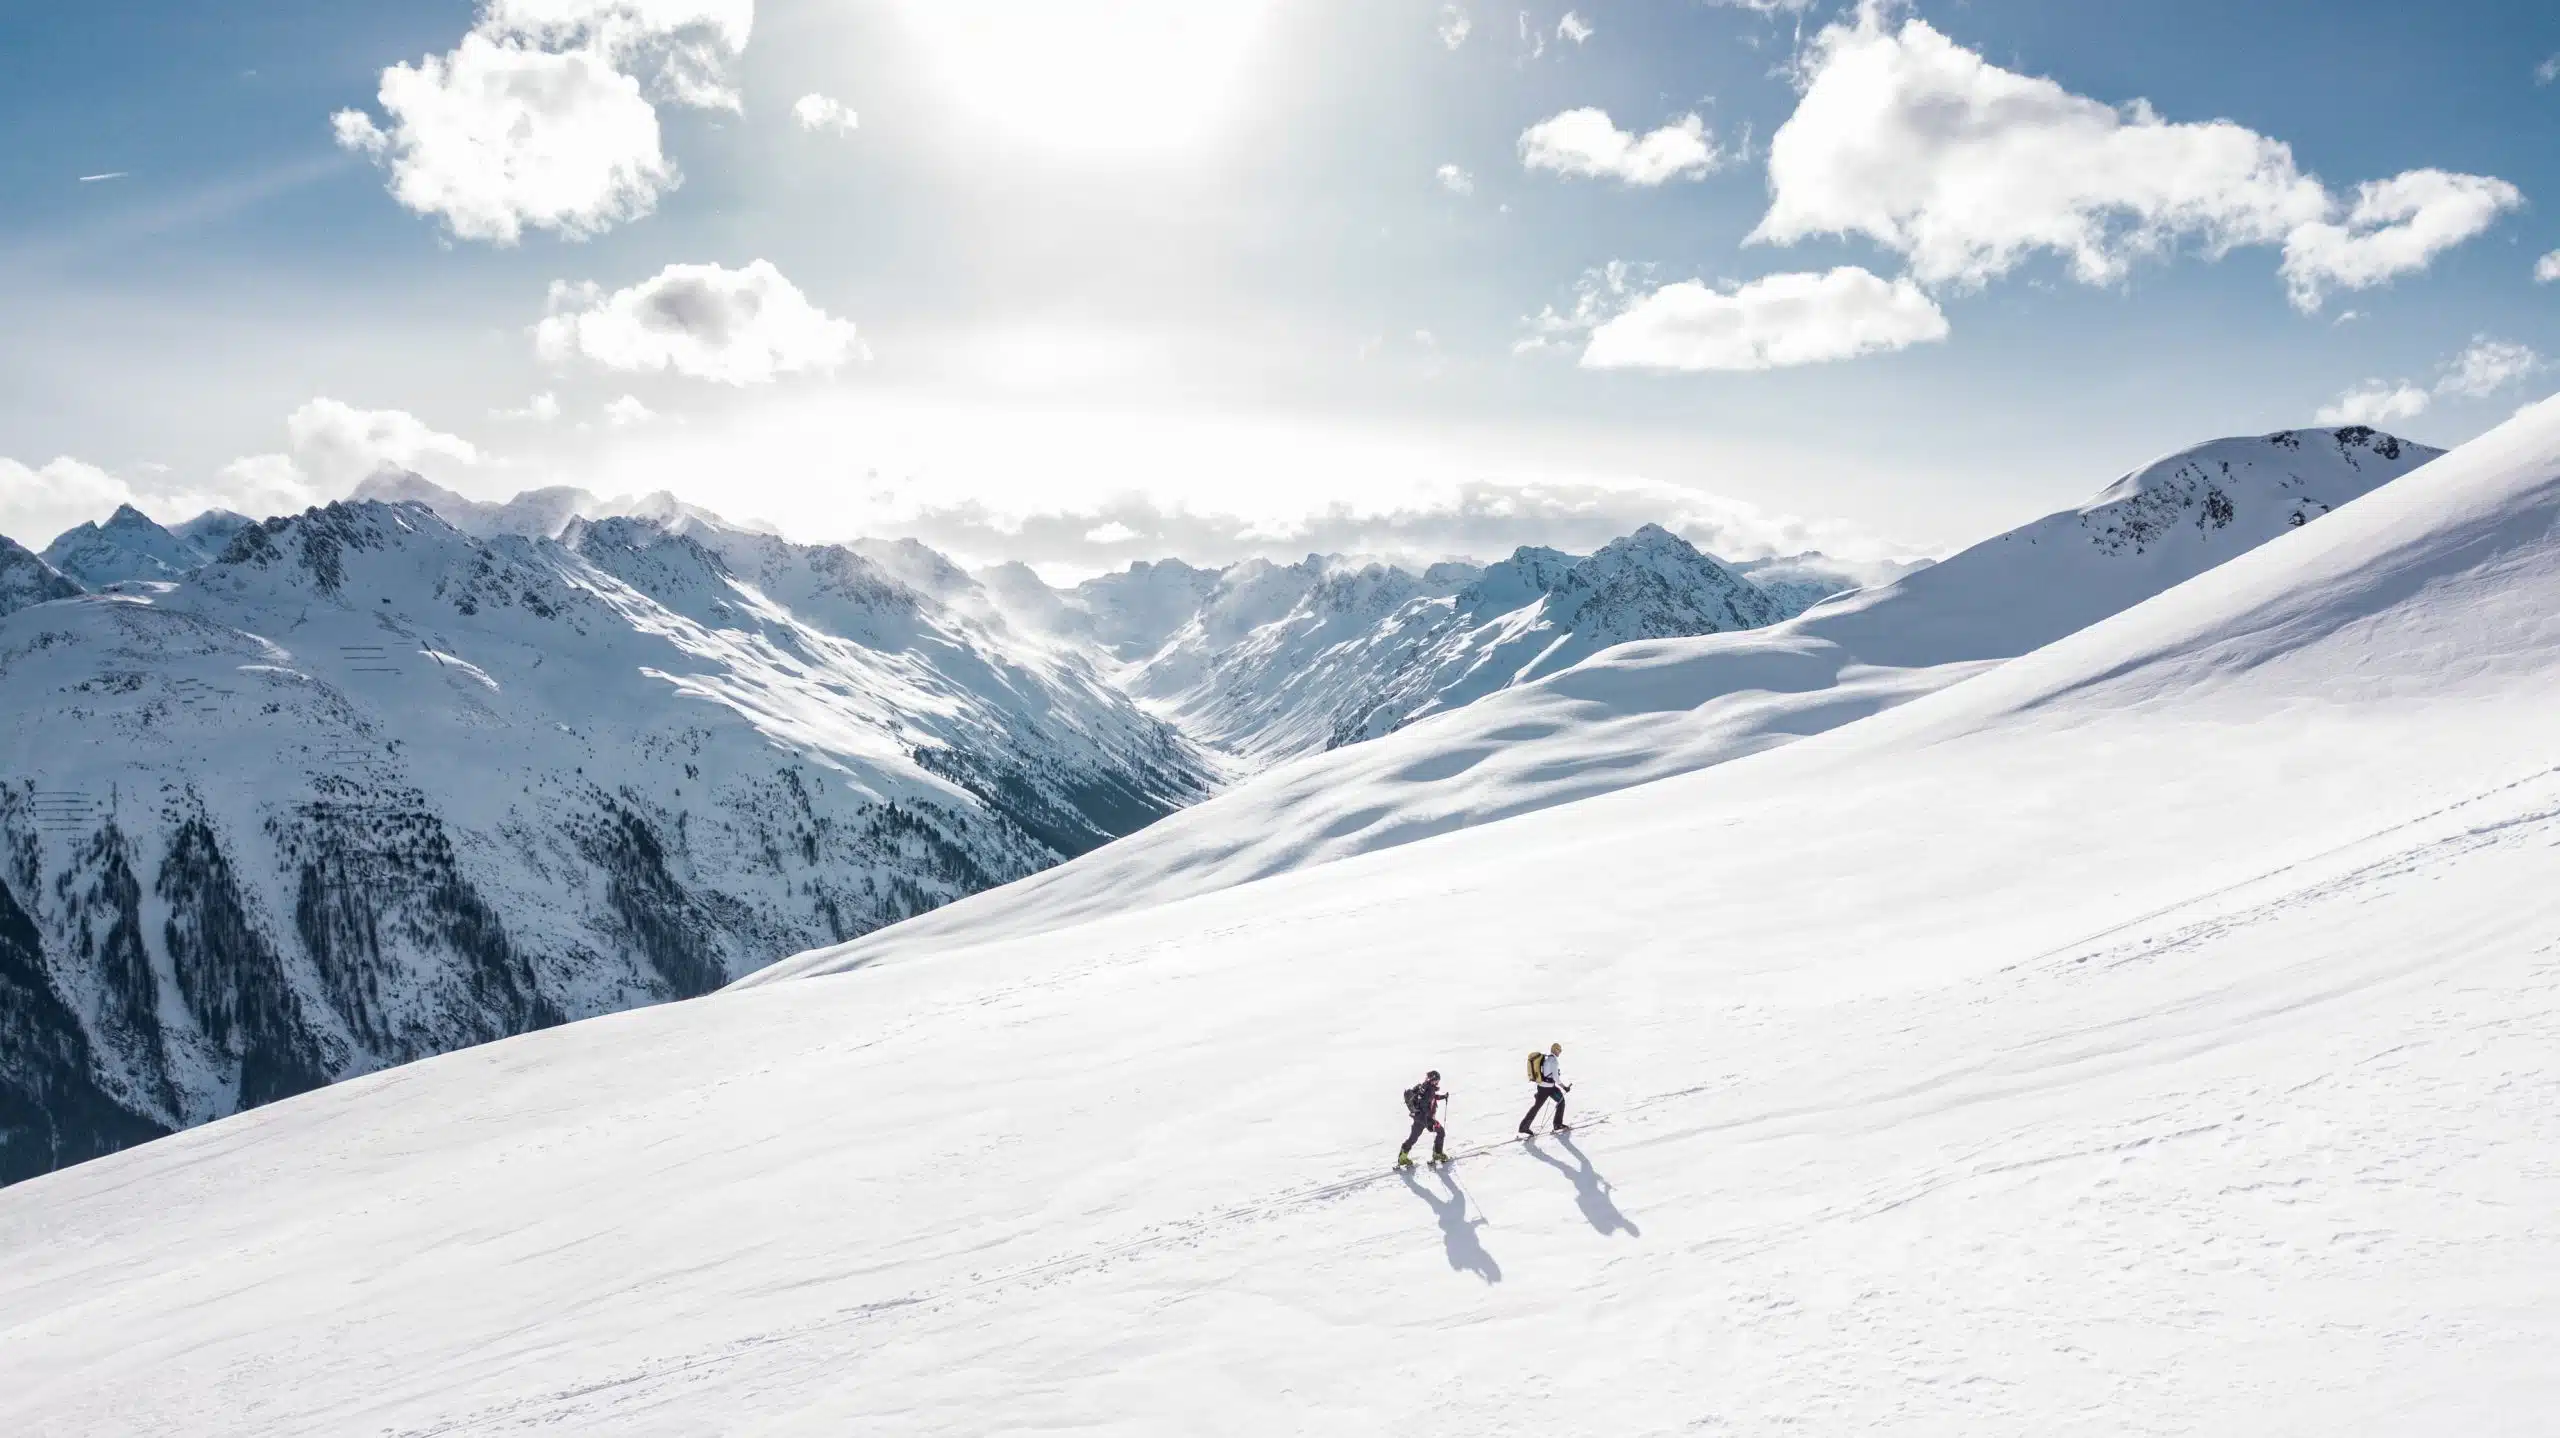 Les plus belles stations de ski en europe : une expérience unique pour des vacances inoubliables